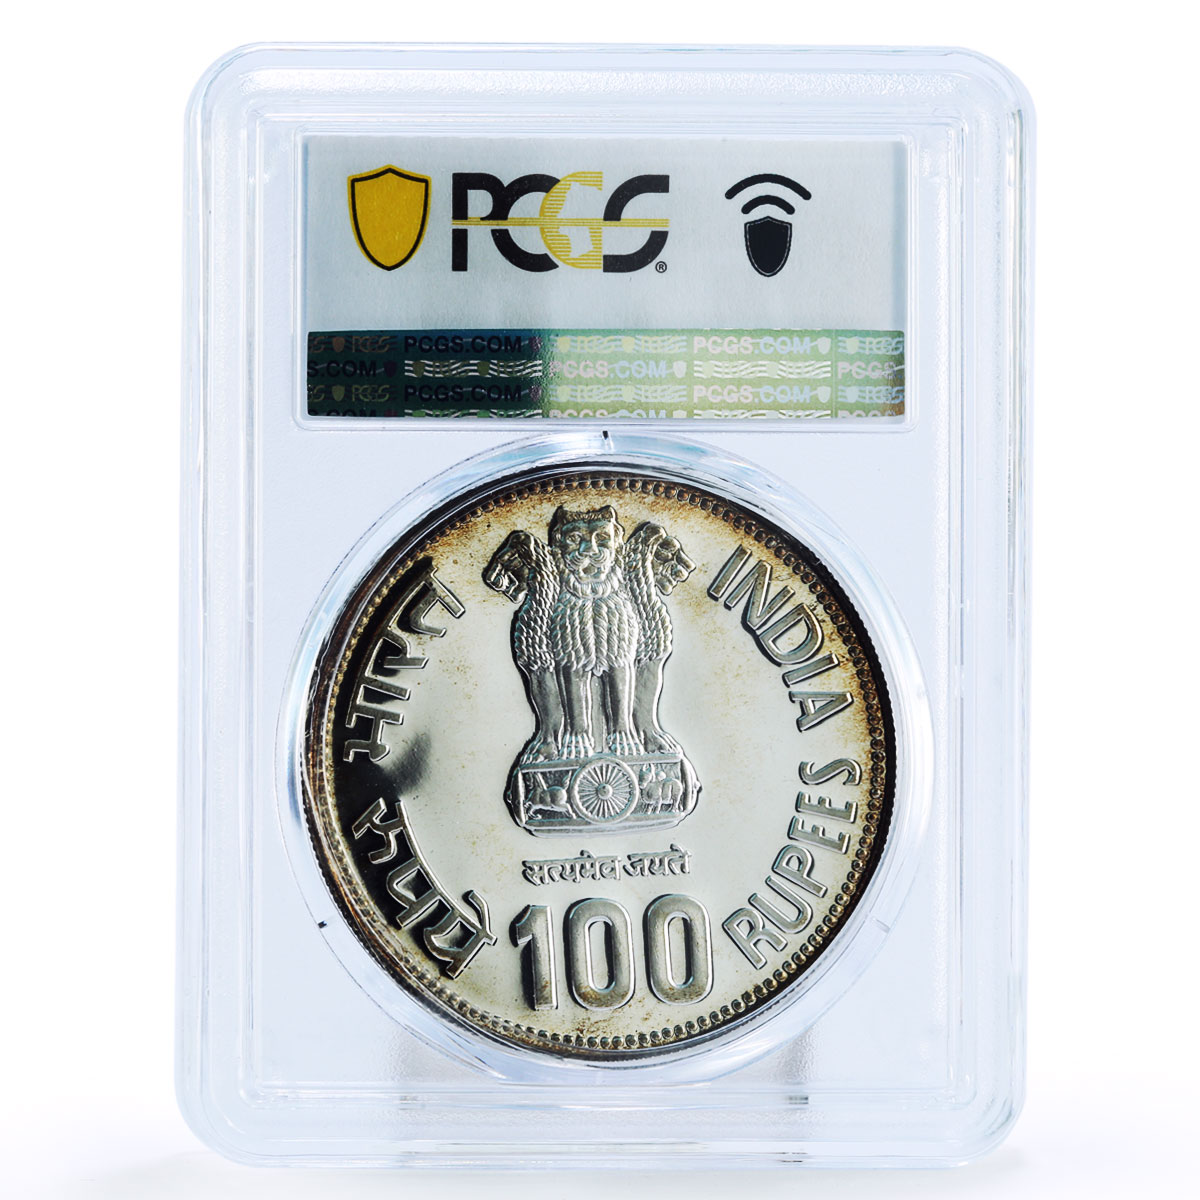 India 100 rupees Indira Gandhi Politics PL65 PCGS silver coin 1985